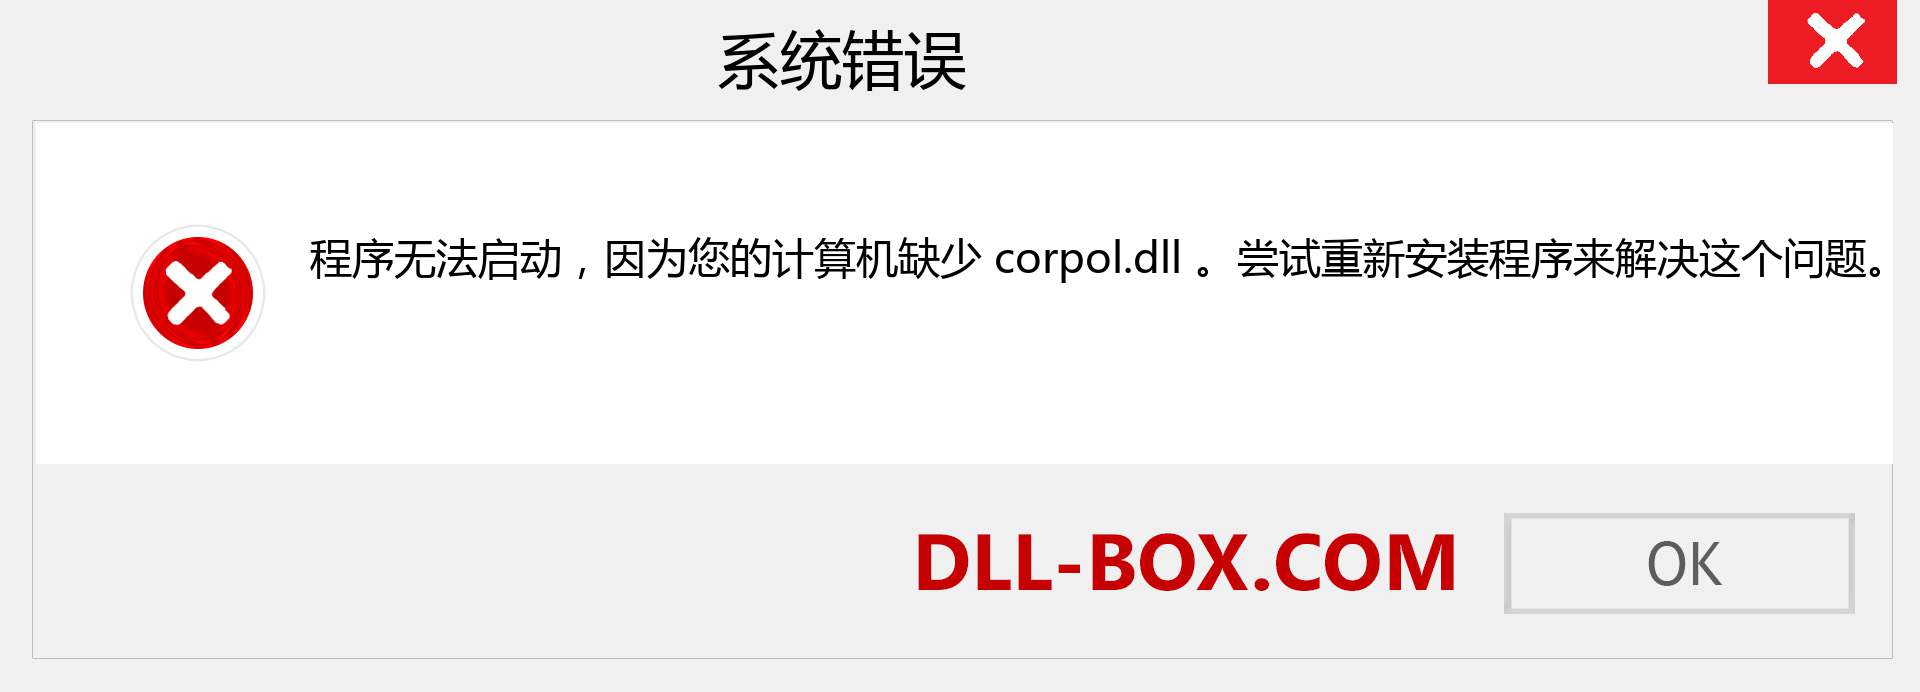 corpol.dll 文件丢失？。 适用于 Windows 7、8、10 的下载 - 修复 Windows、照片、图像上的 corpol dll 丢失错误